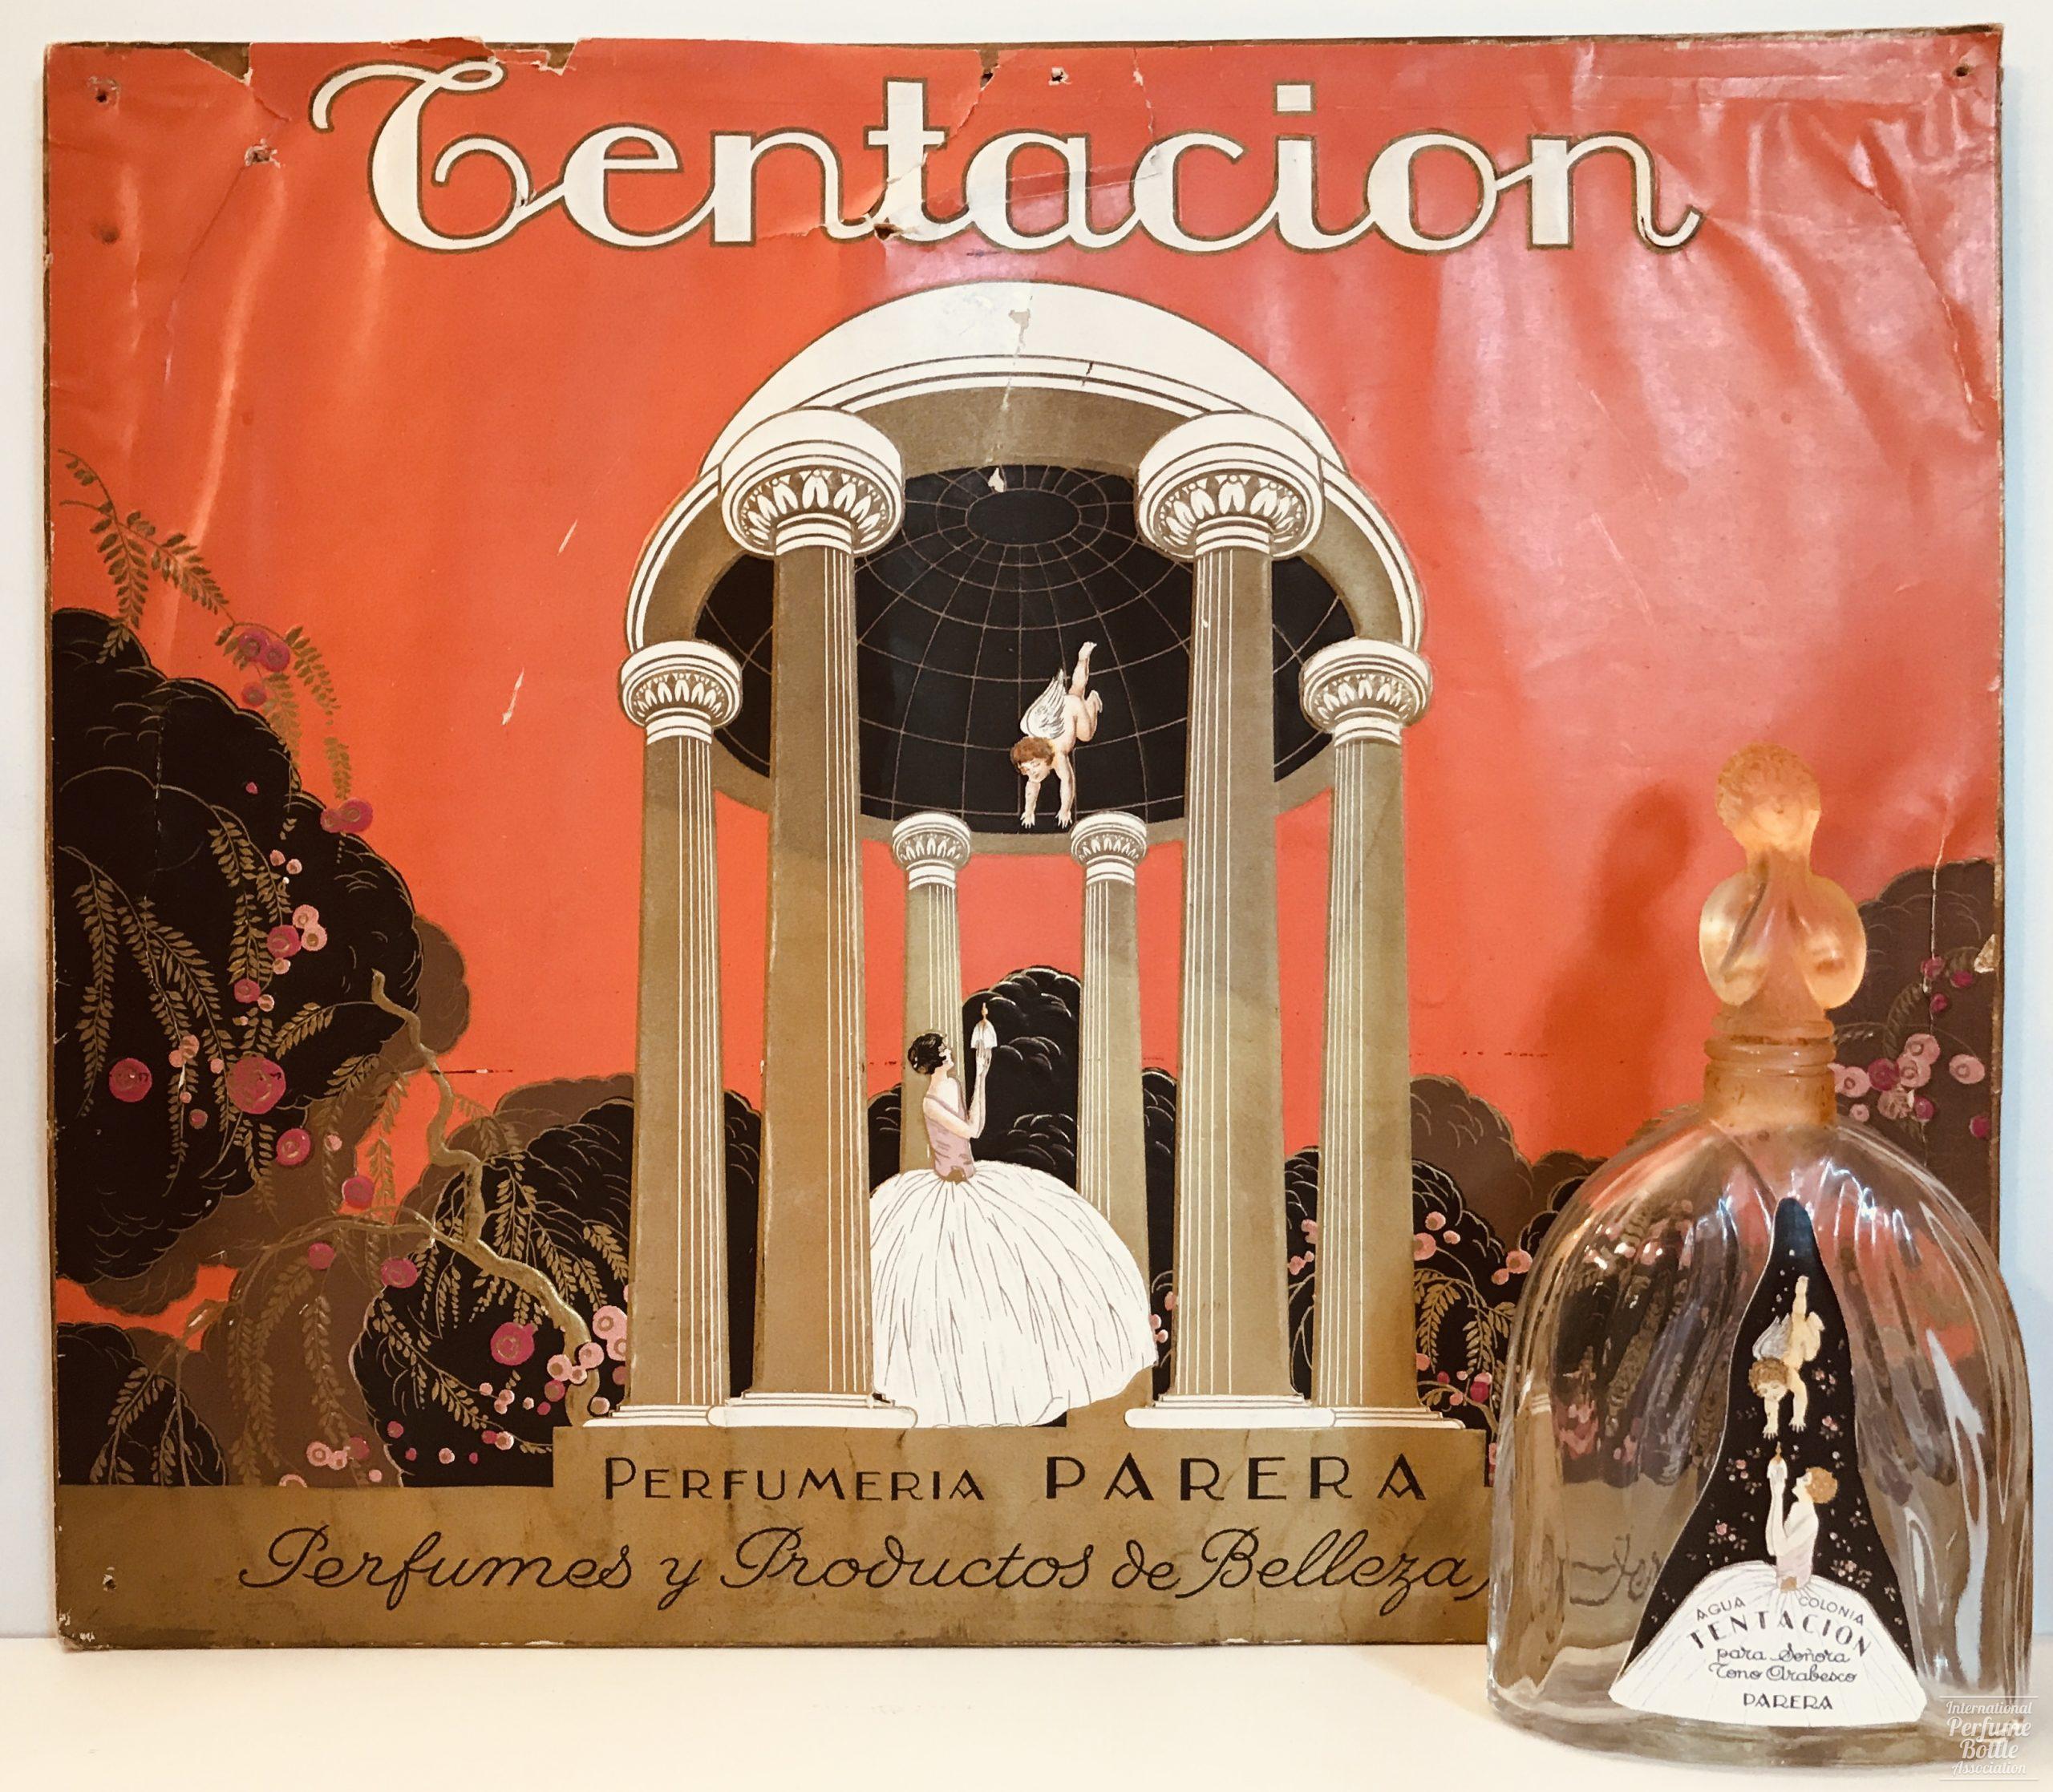 "Tentación" Display and Bottle by Perfumeria Parera